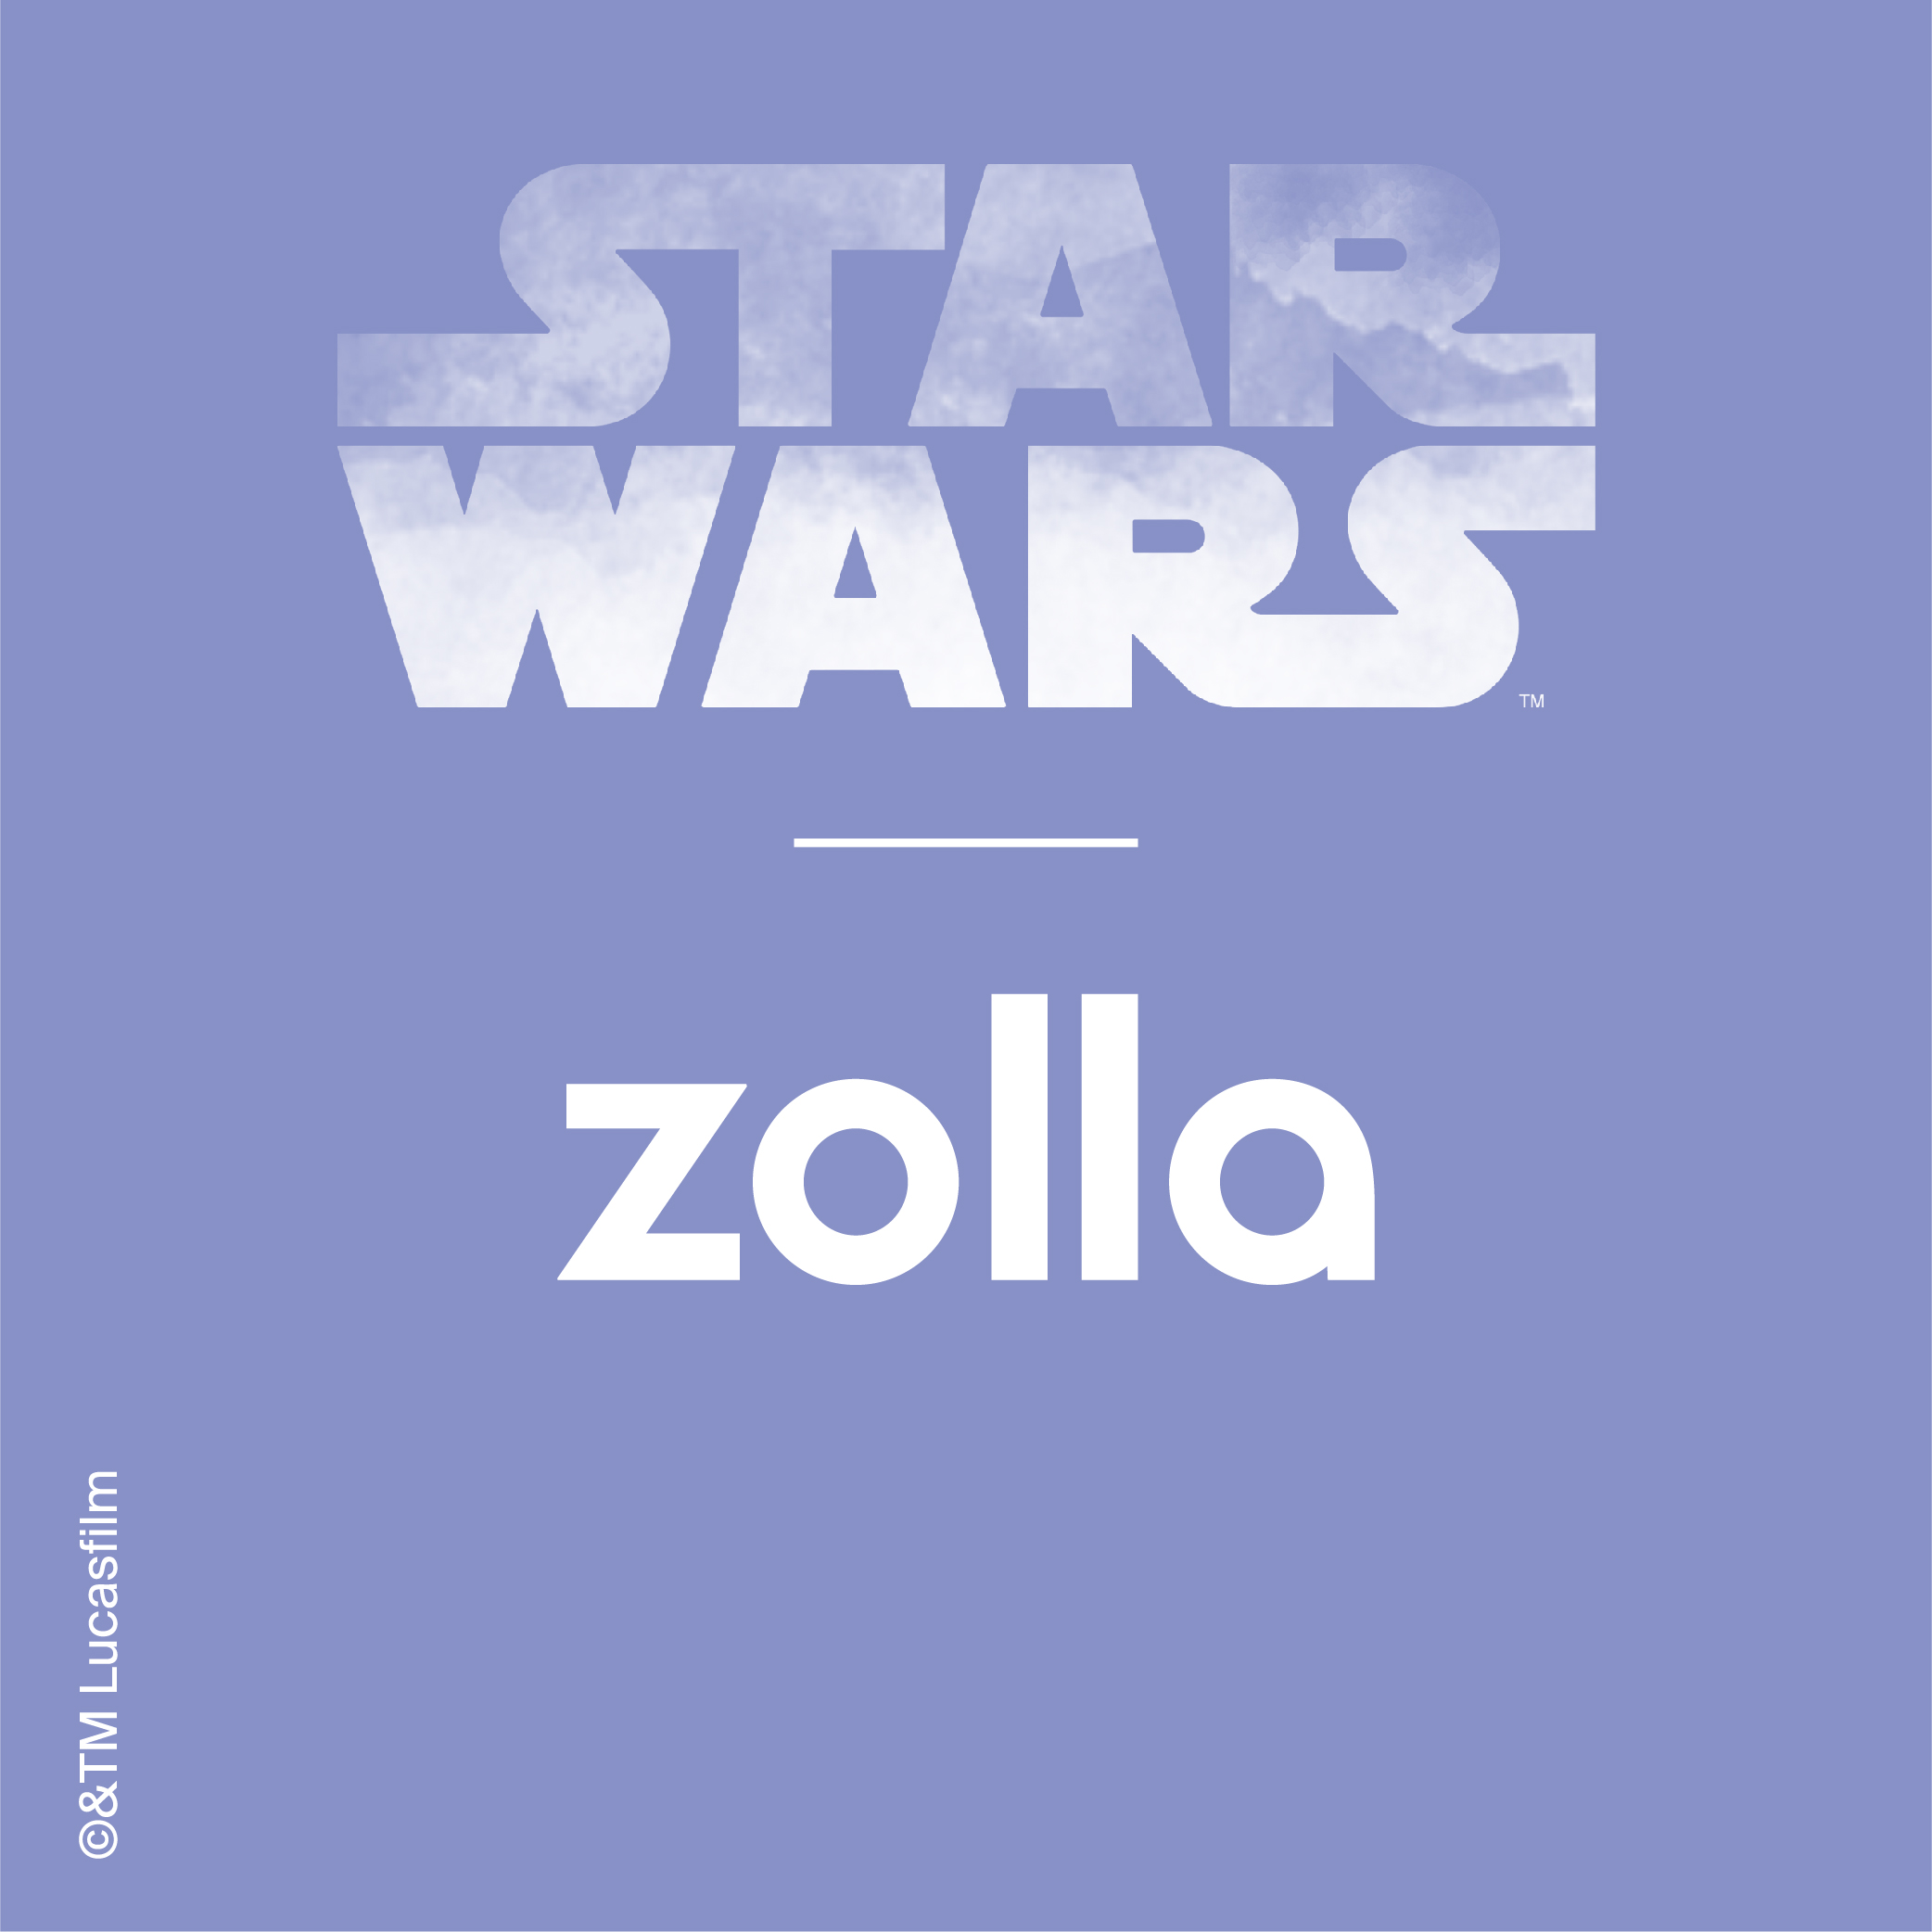 Новая коллекция ZollaхStar Wars